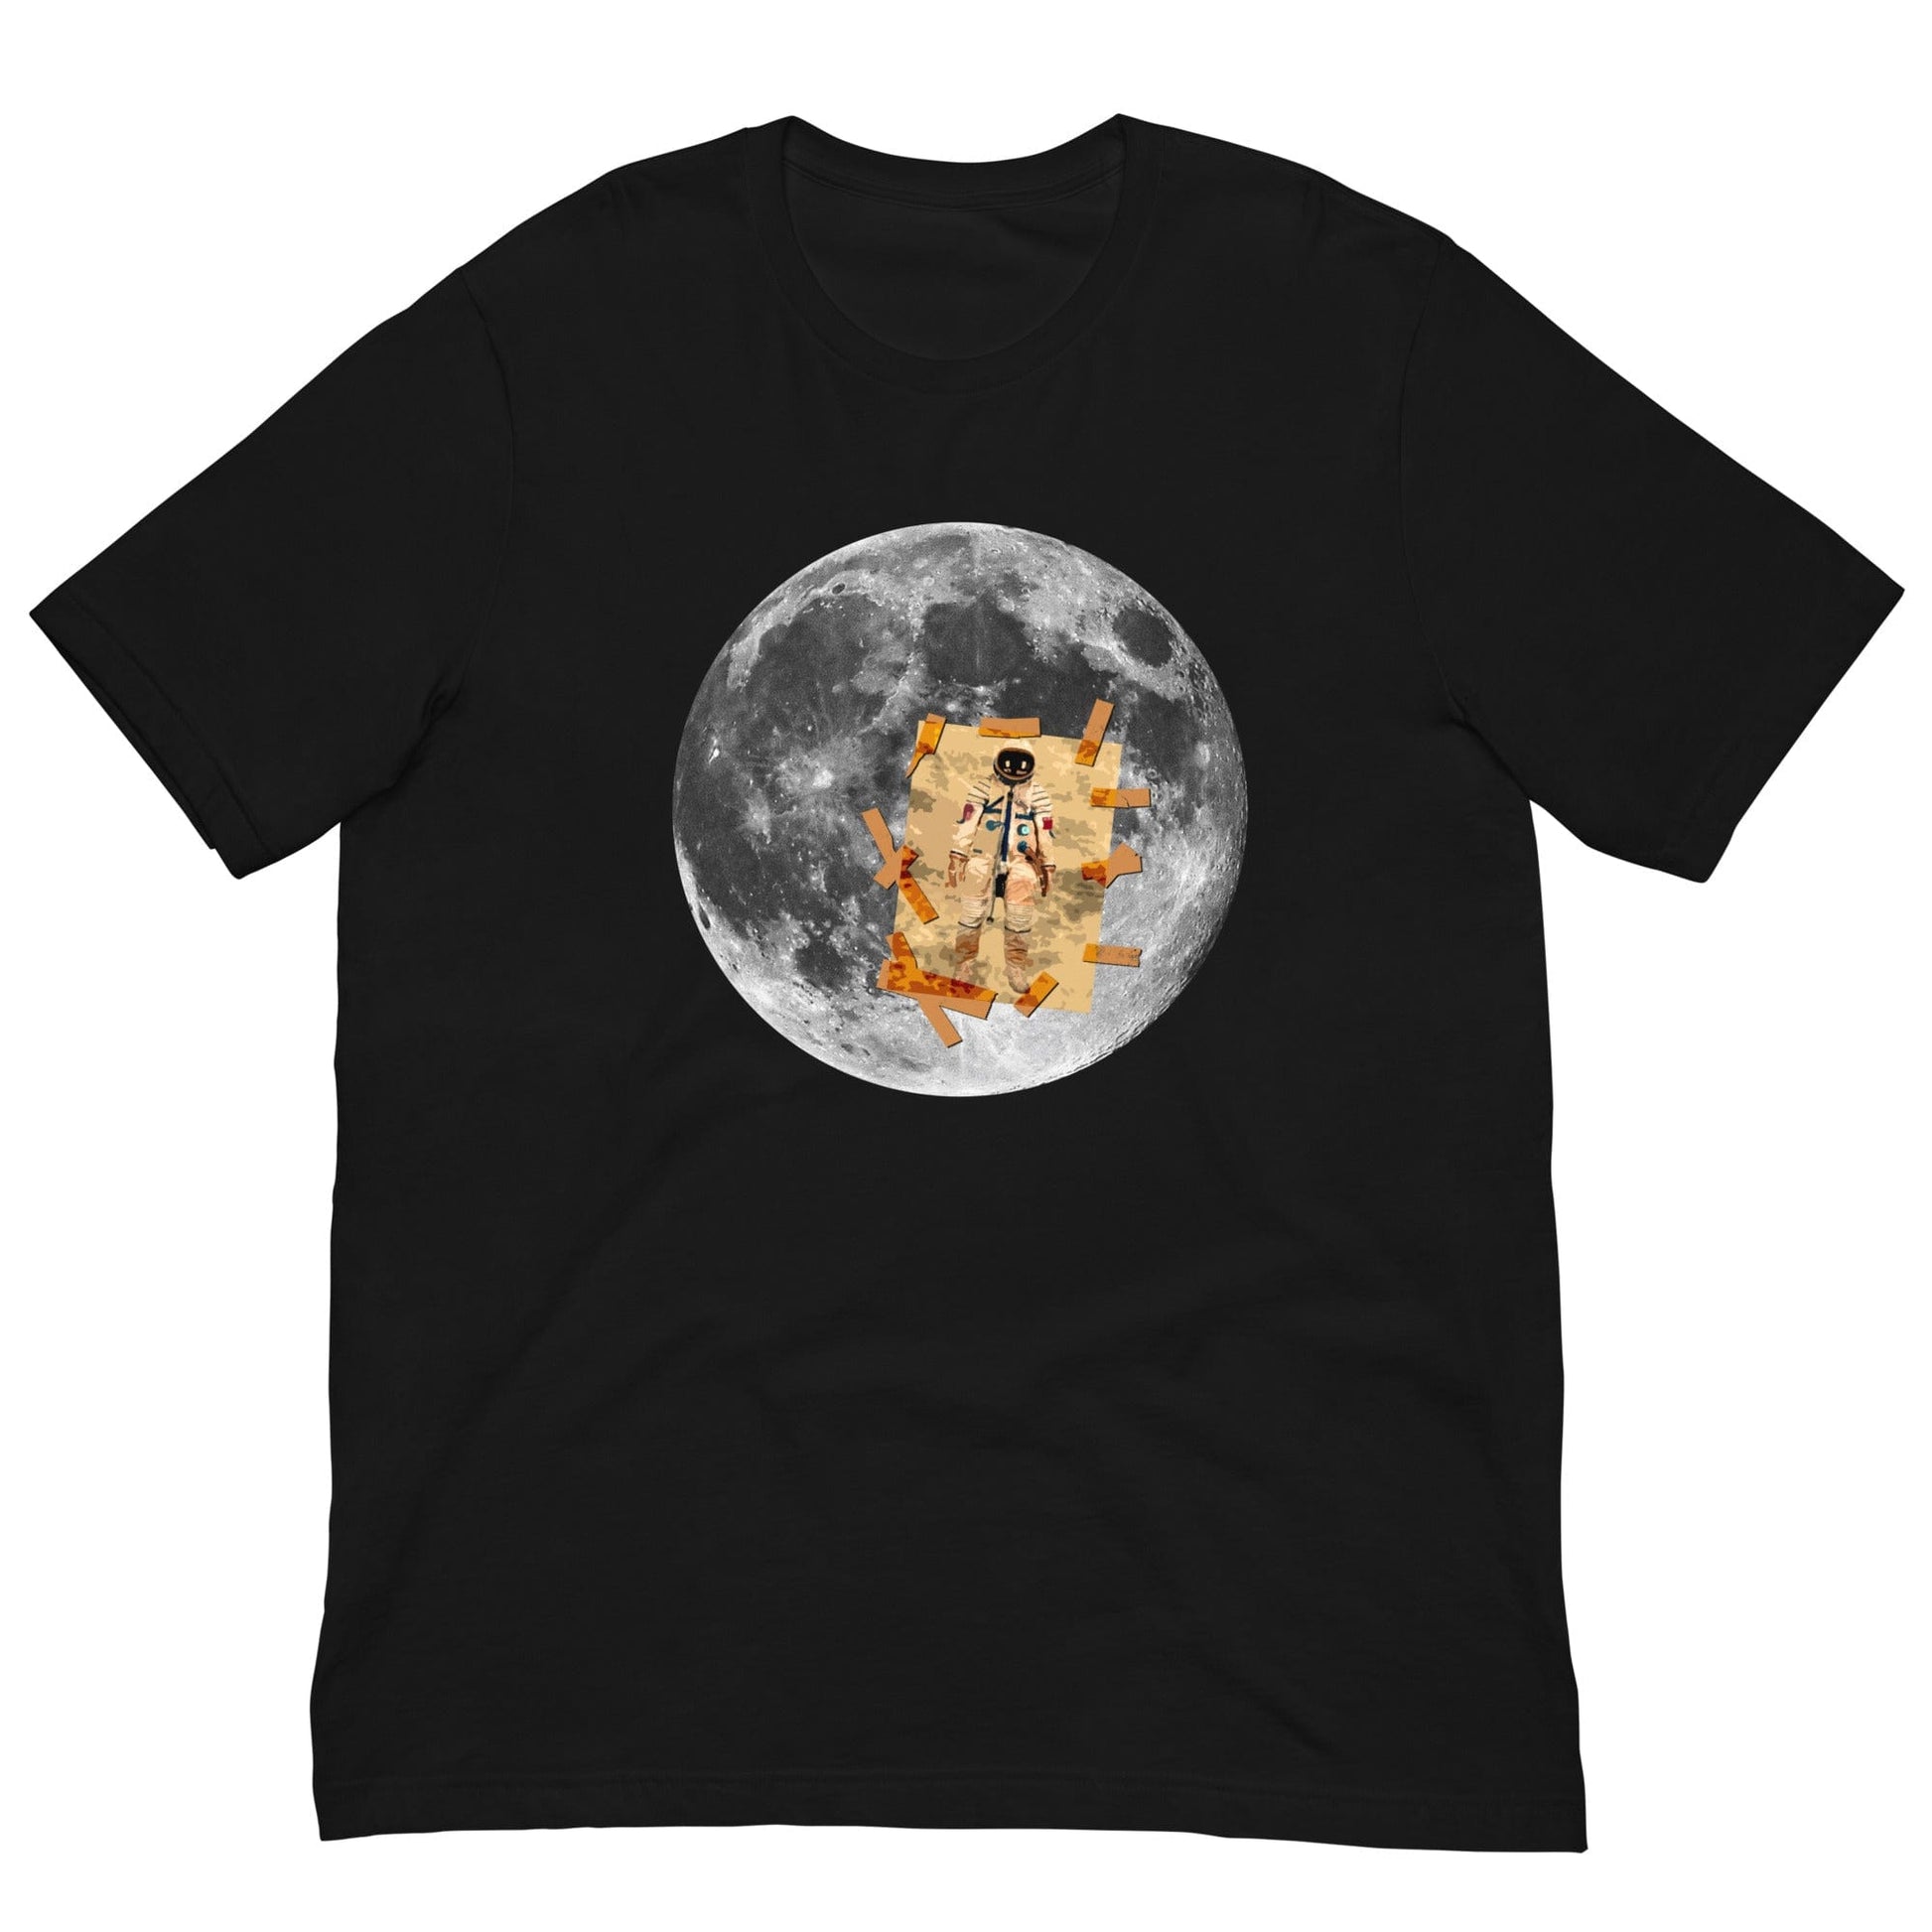 Man on the Moon T-shirt Black / XS